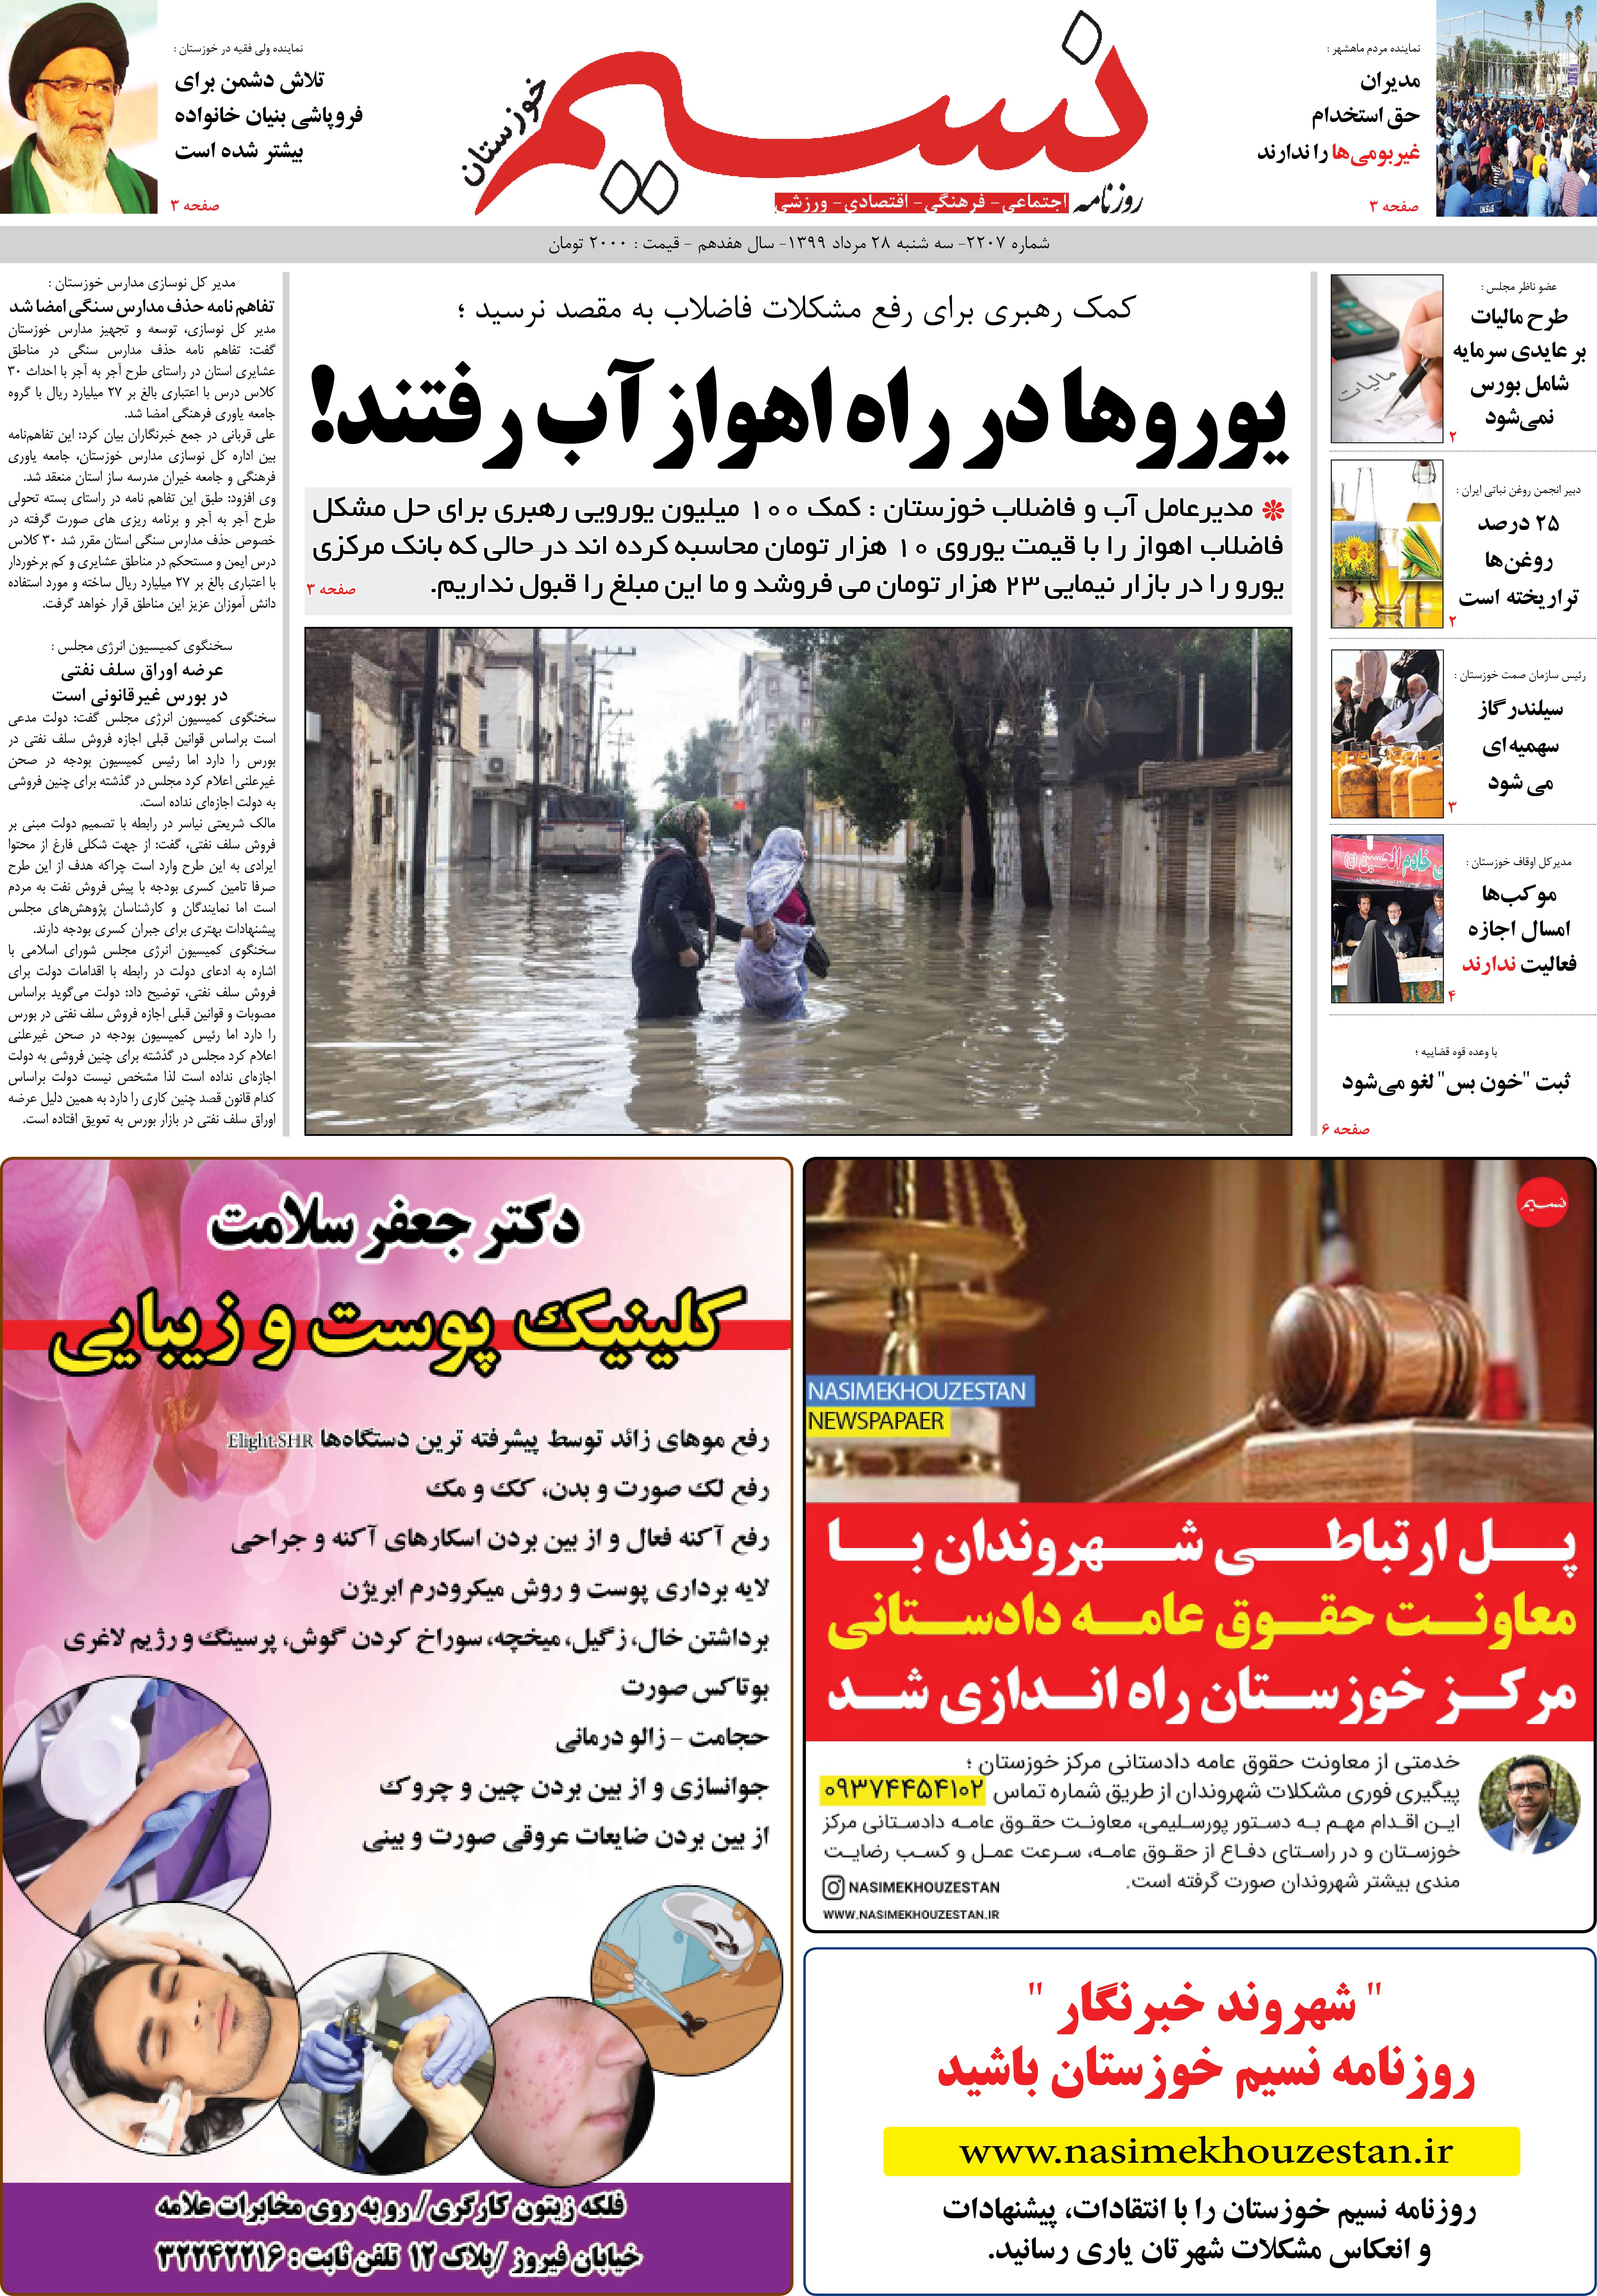 صفحه اصلی روزنامه نسیم شماره 2207 